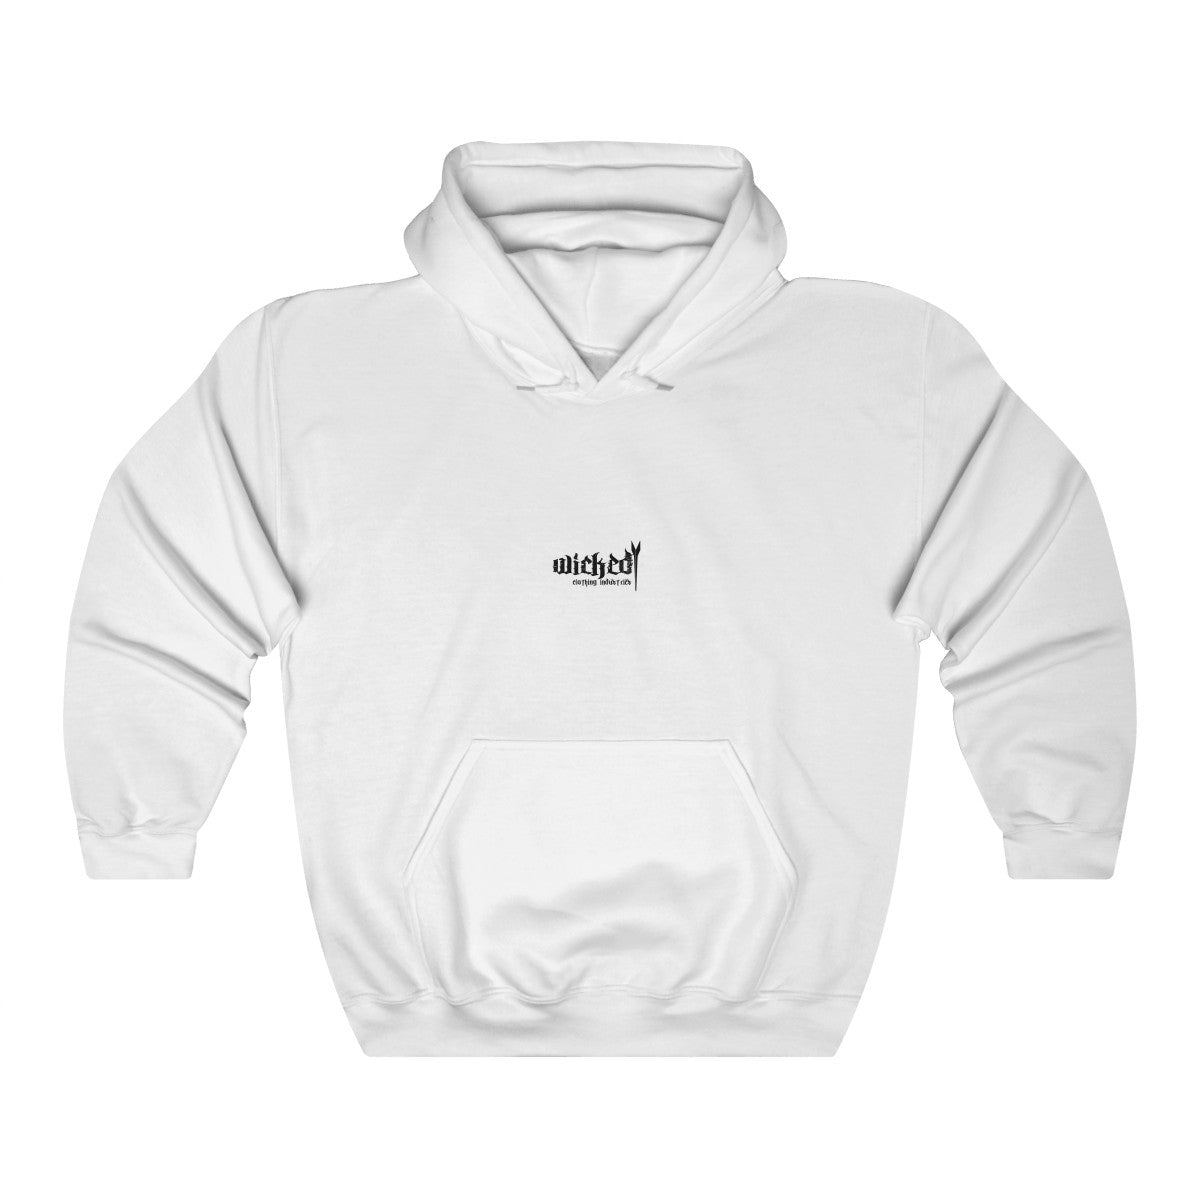 WCI 2 Hooded Sweatshirt